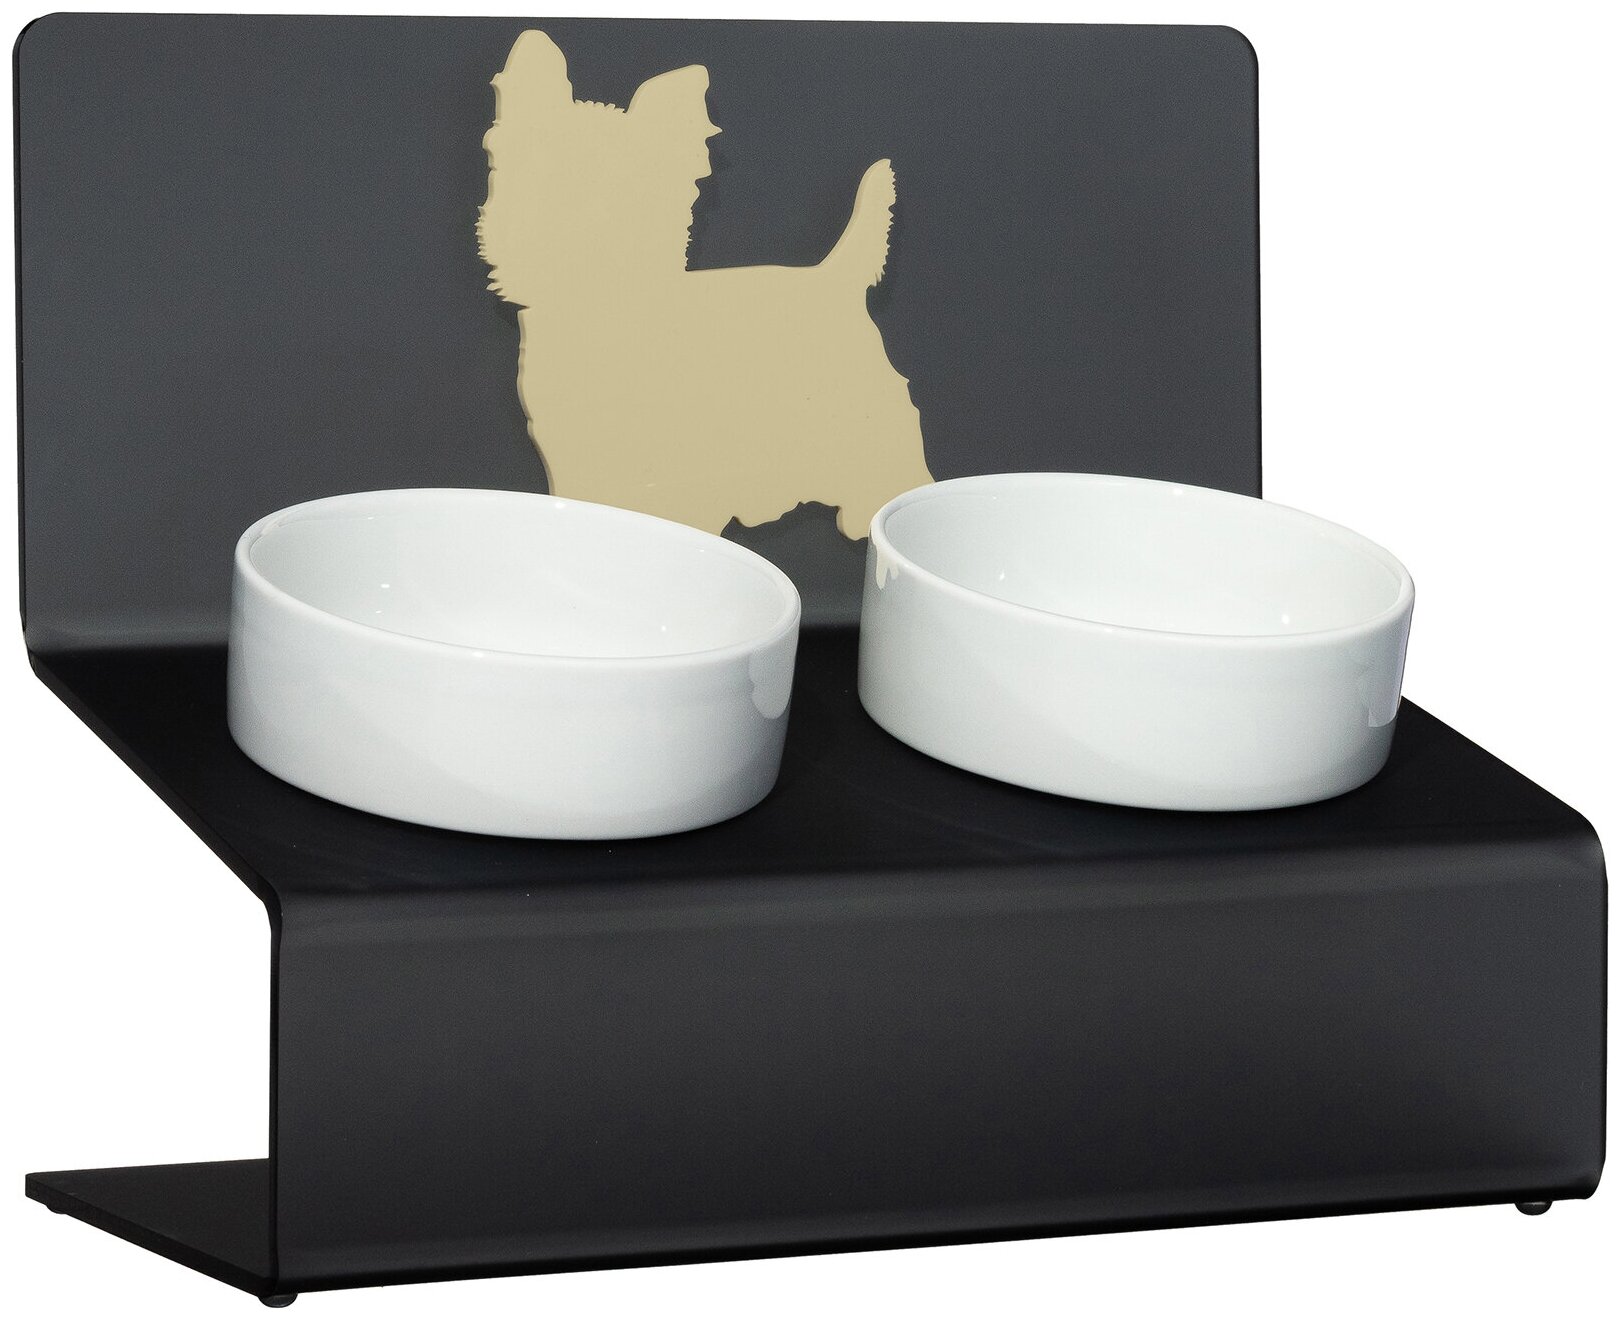 Миска для собак на подставке с наклоном Artmiska "Йорк" XS двойная 2x360 мл, графитовая